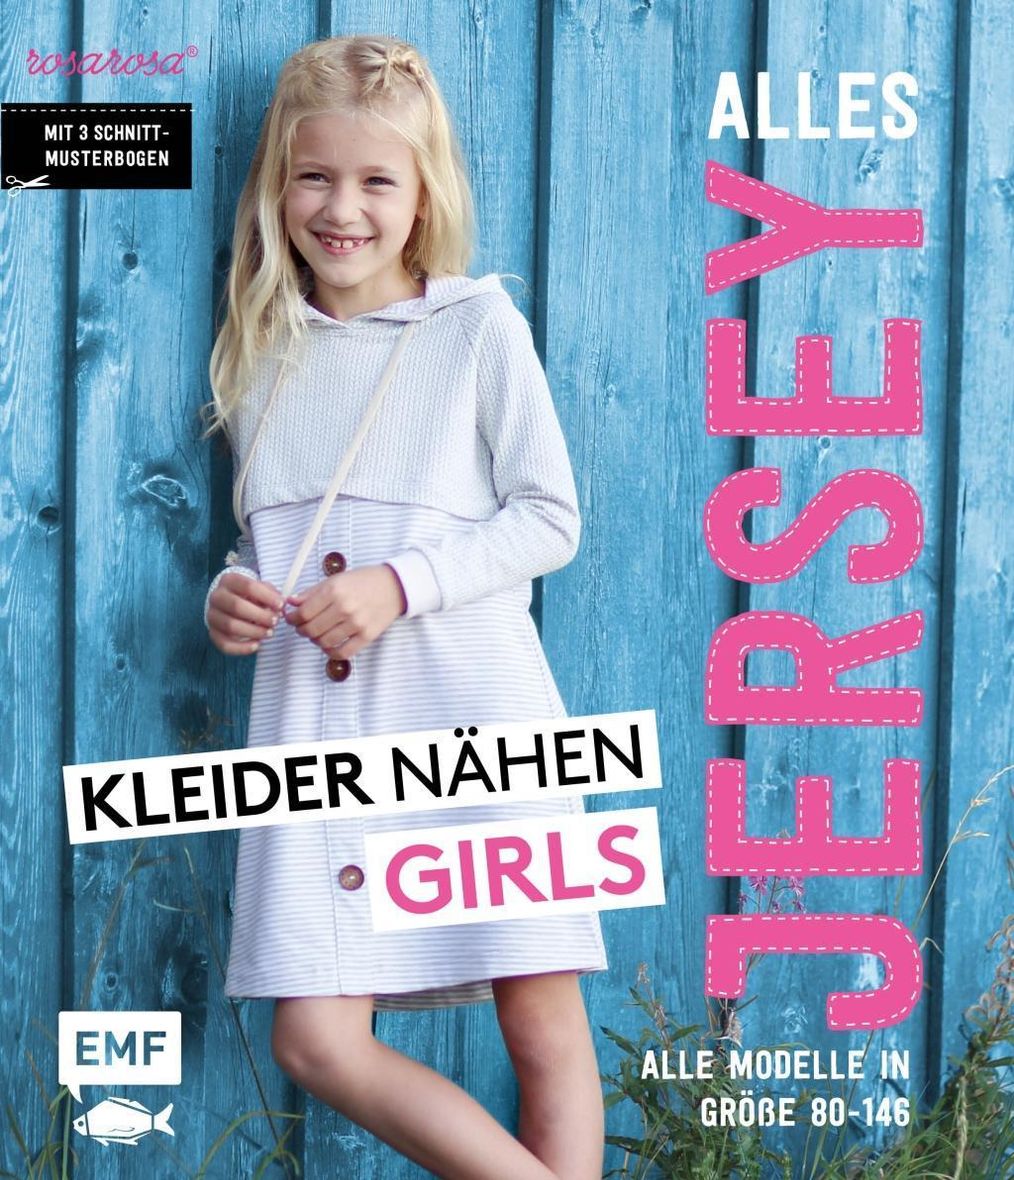 Alles Jersey - Kleider nähen Girls Buch versandkostenfrei bei Weltbild.ch